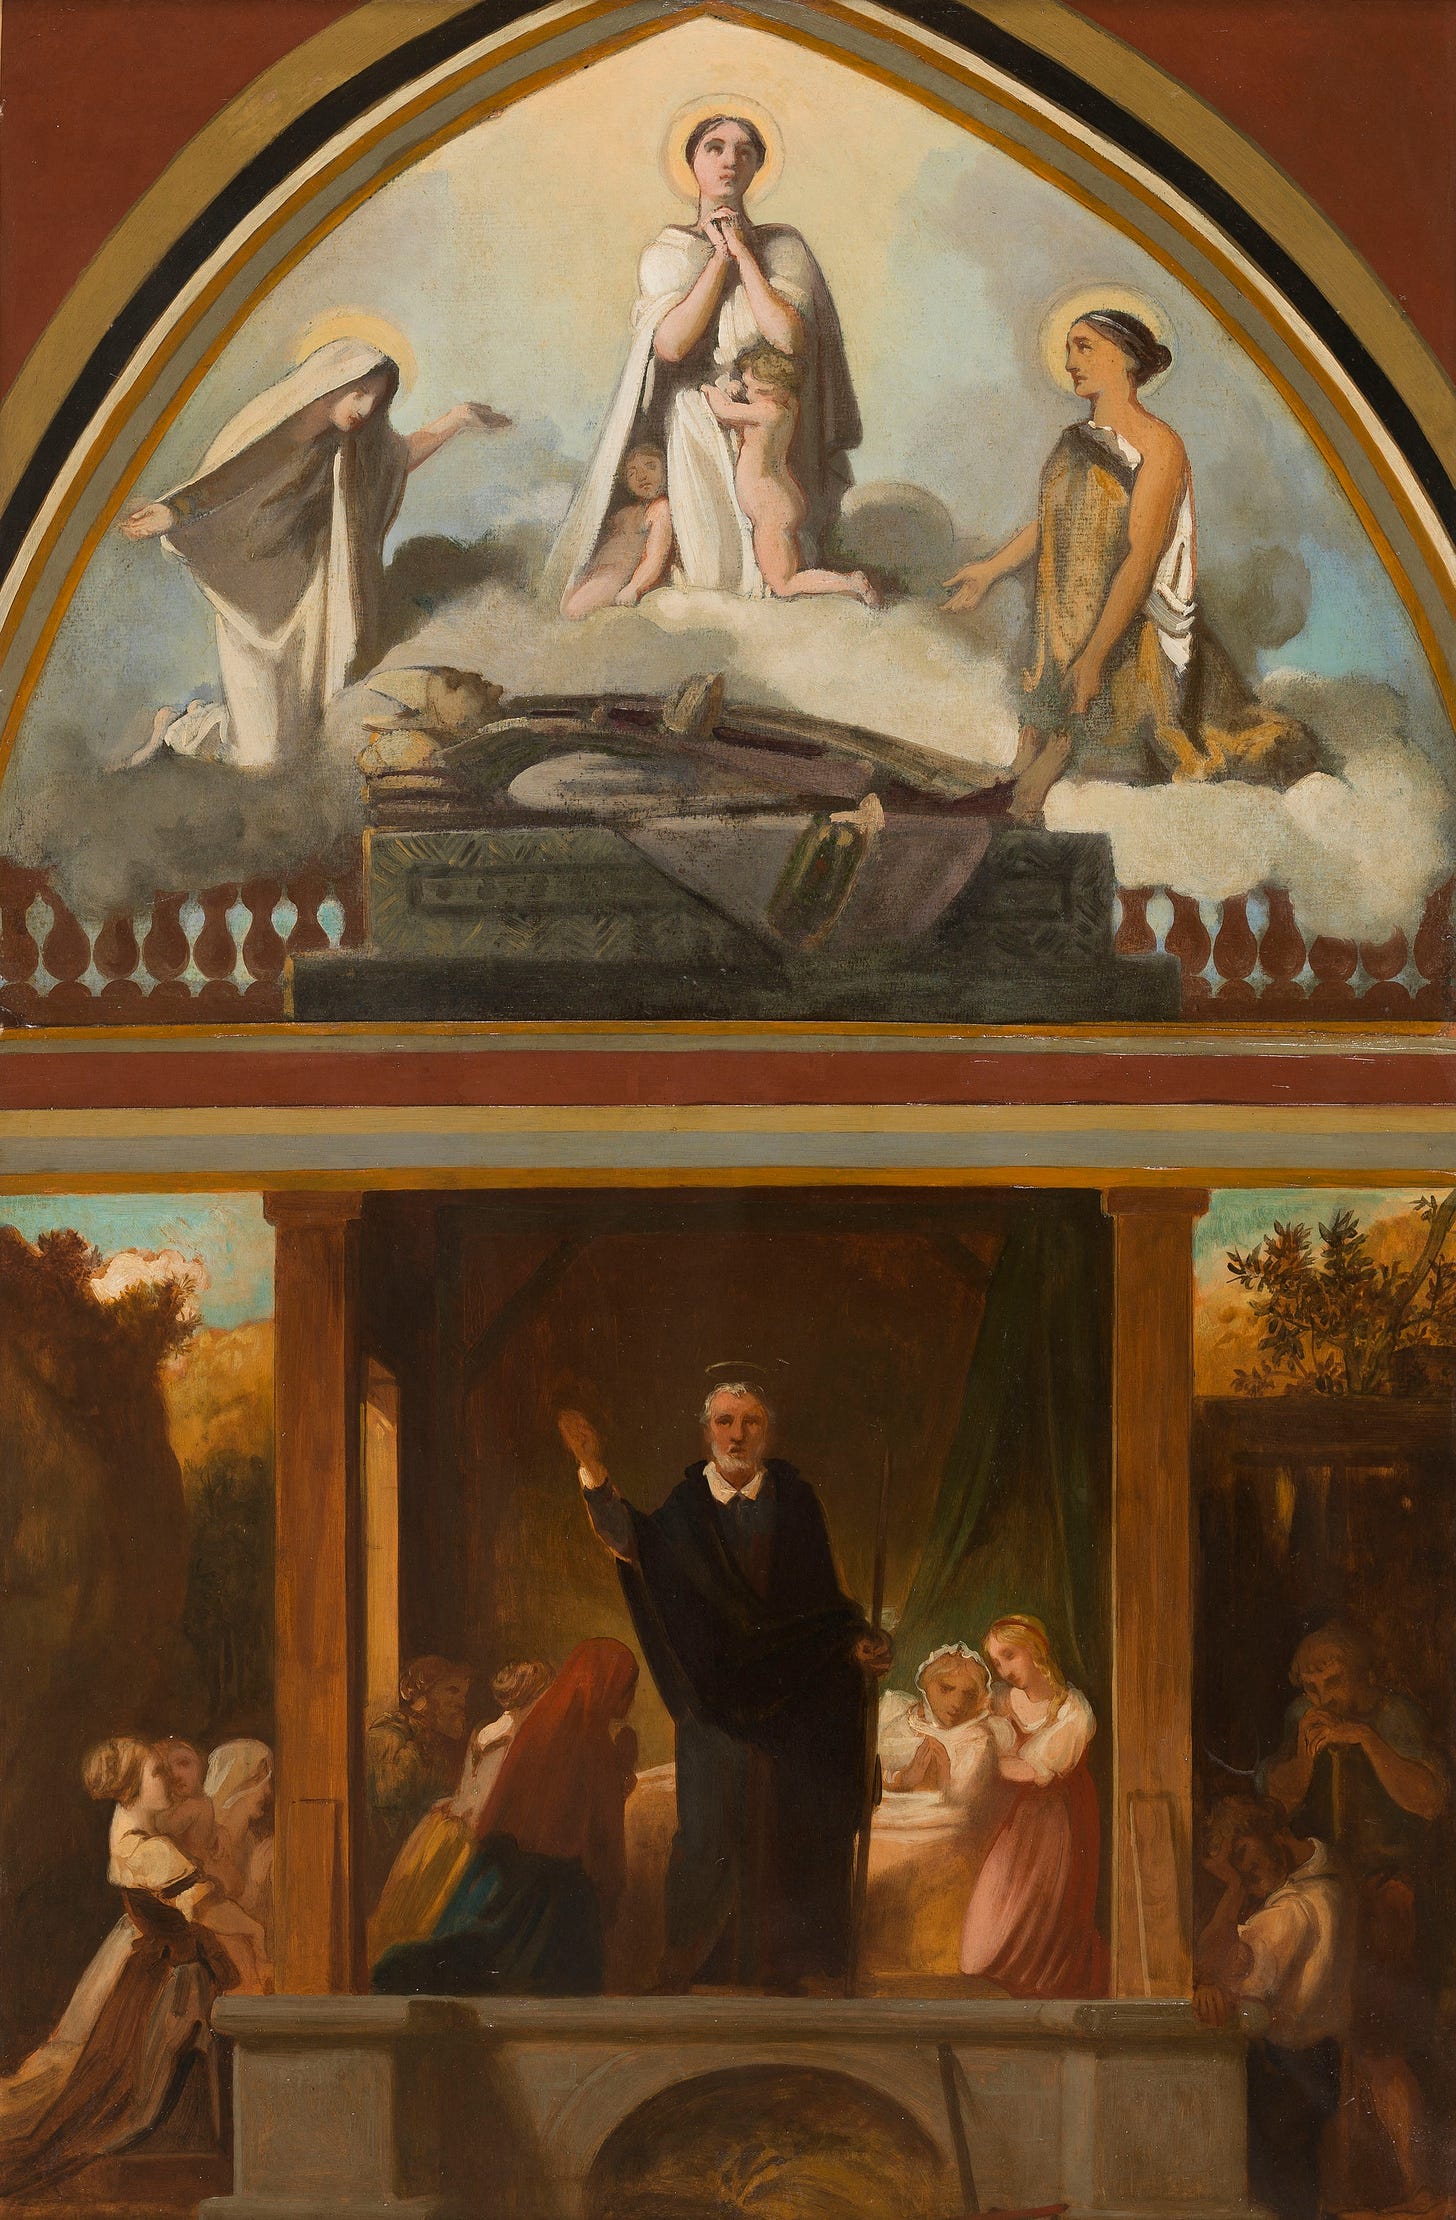 Les courses apostoliques de saint François de Sales – L’apothéose de saint François de Sales (1852) by Victor-Louis Mottez (French, 1809-1897)